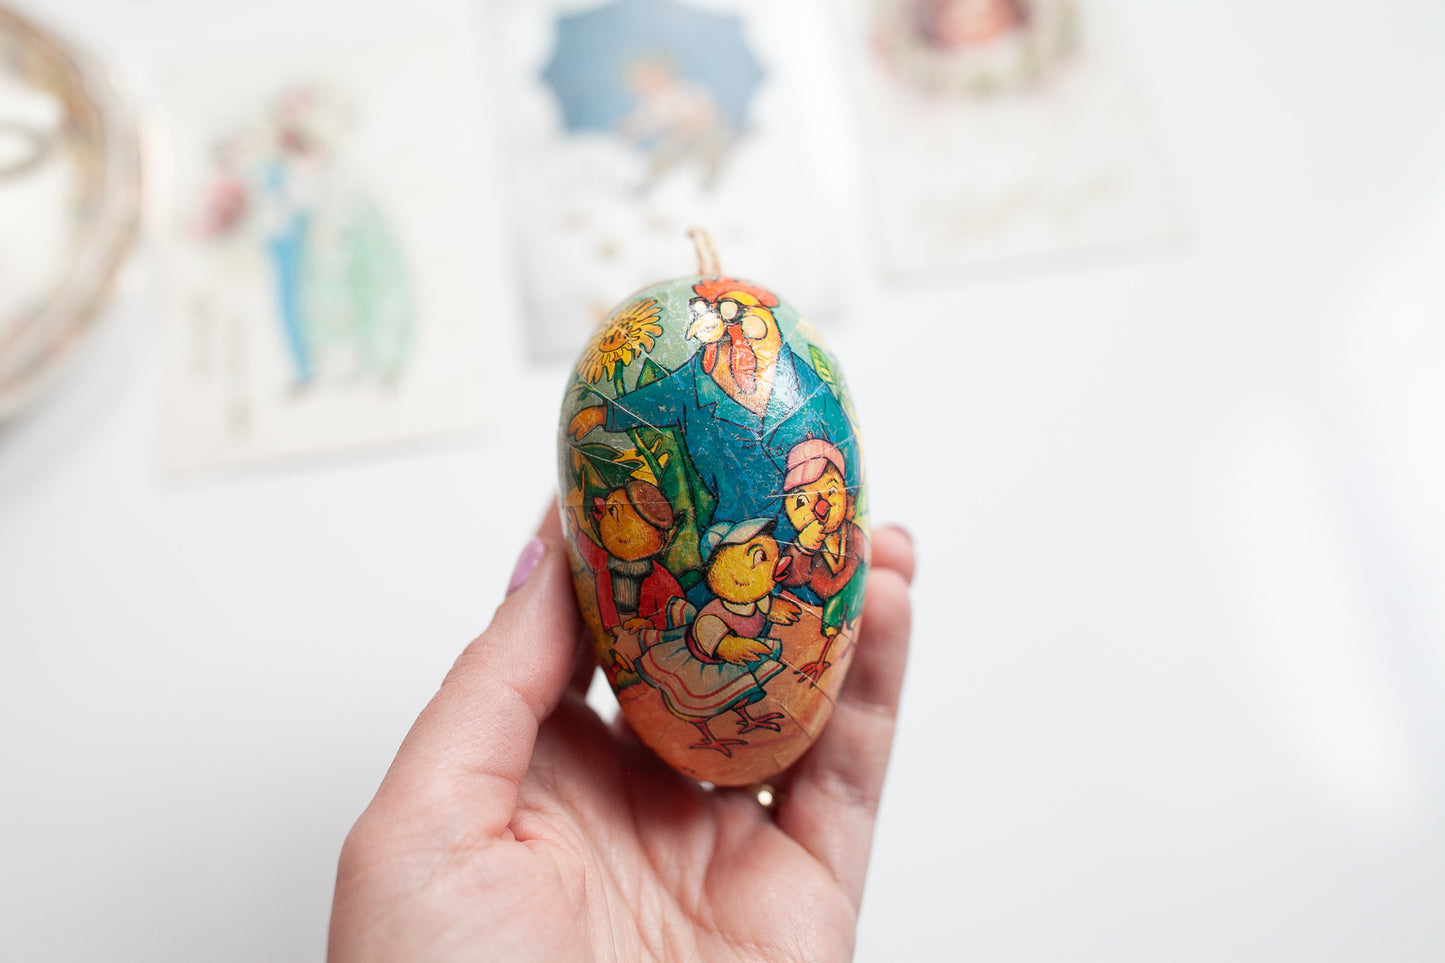 Vintage Egg - Cardboard German Easter Egg - Paper Mache Easter Egg